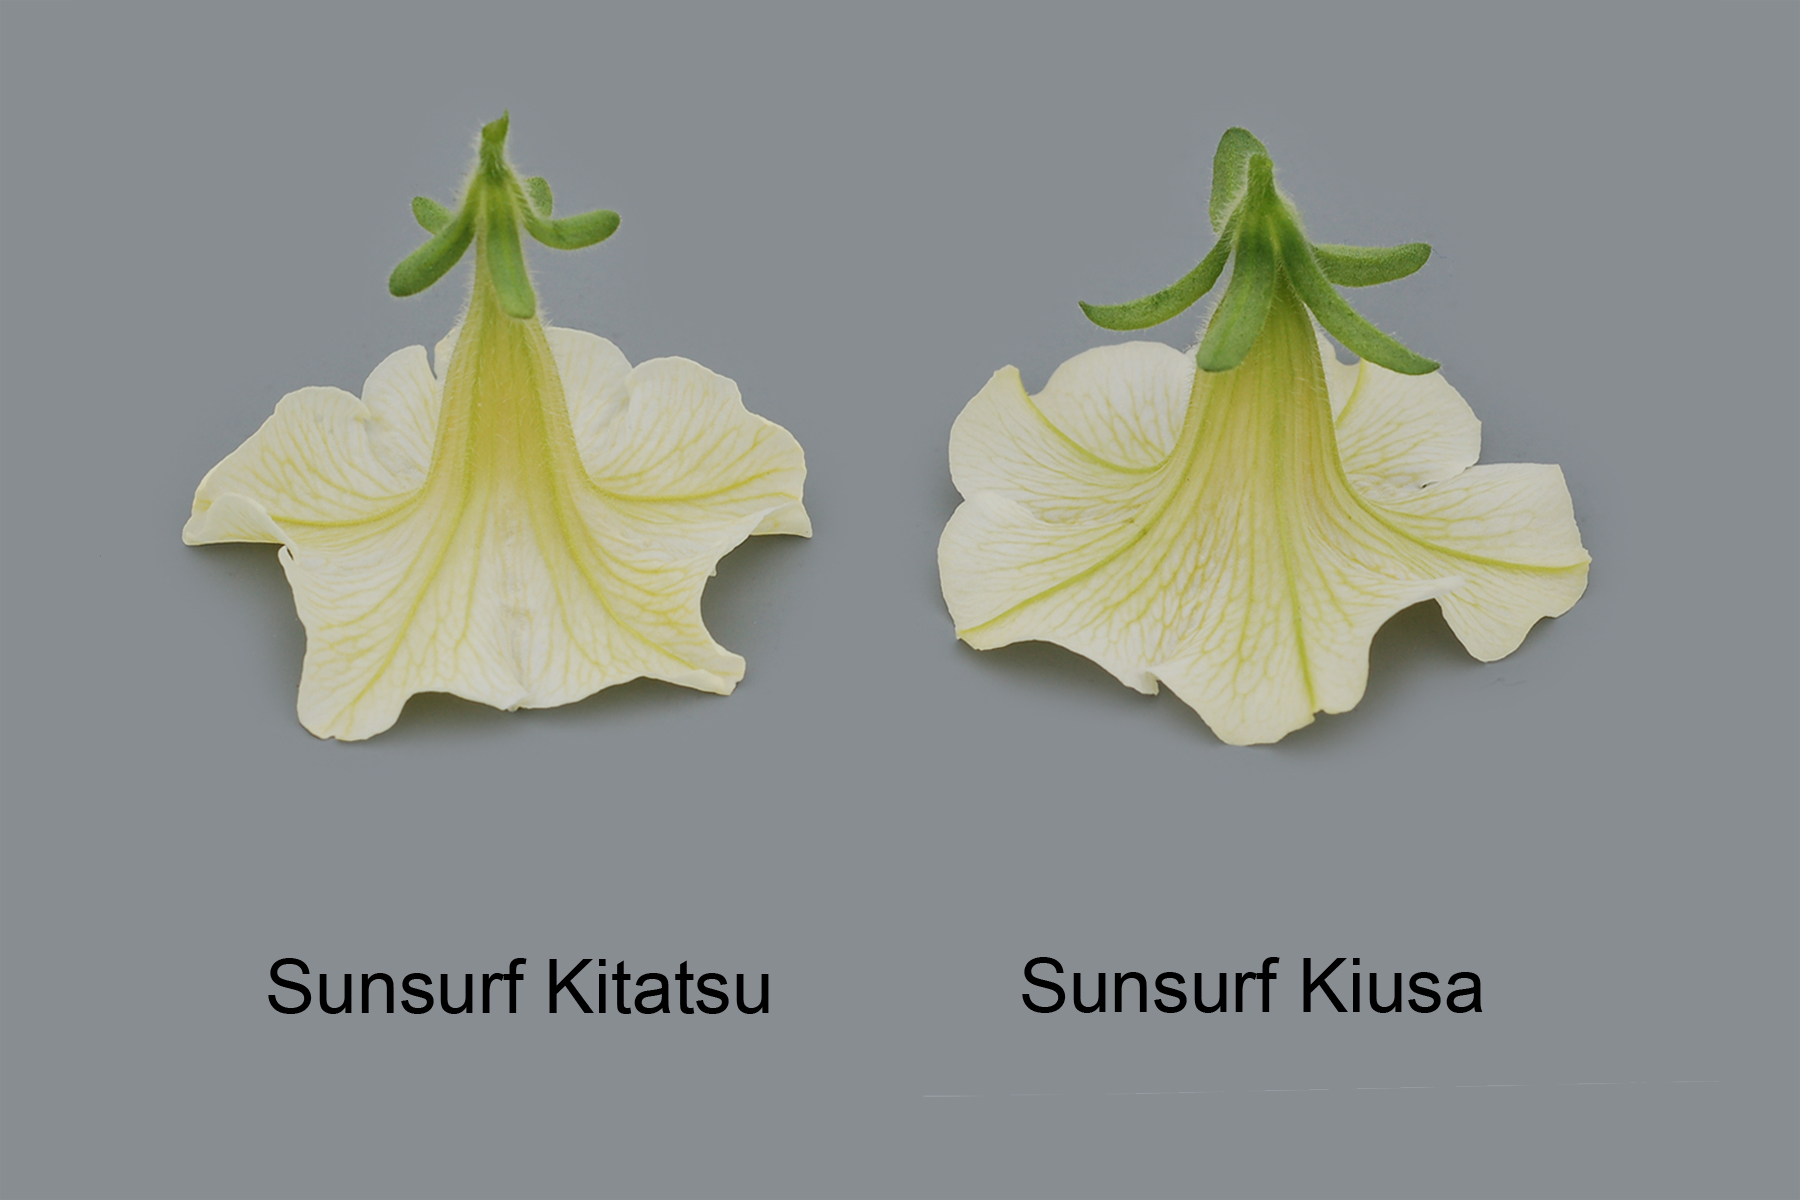 Sunsurf Kitatsu